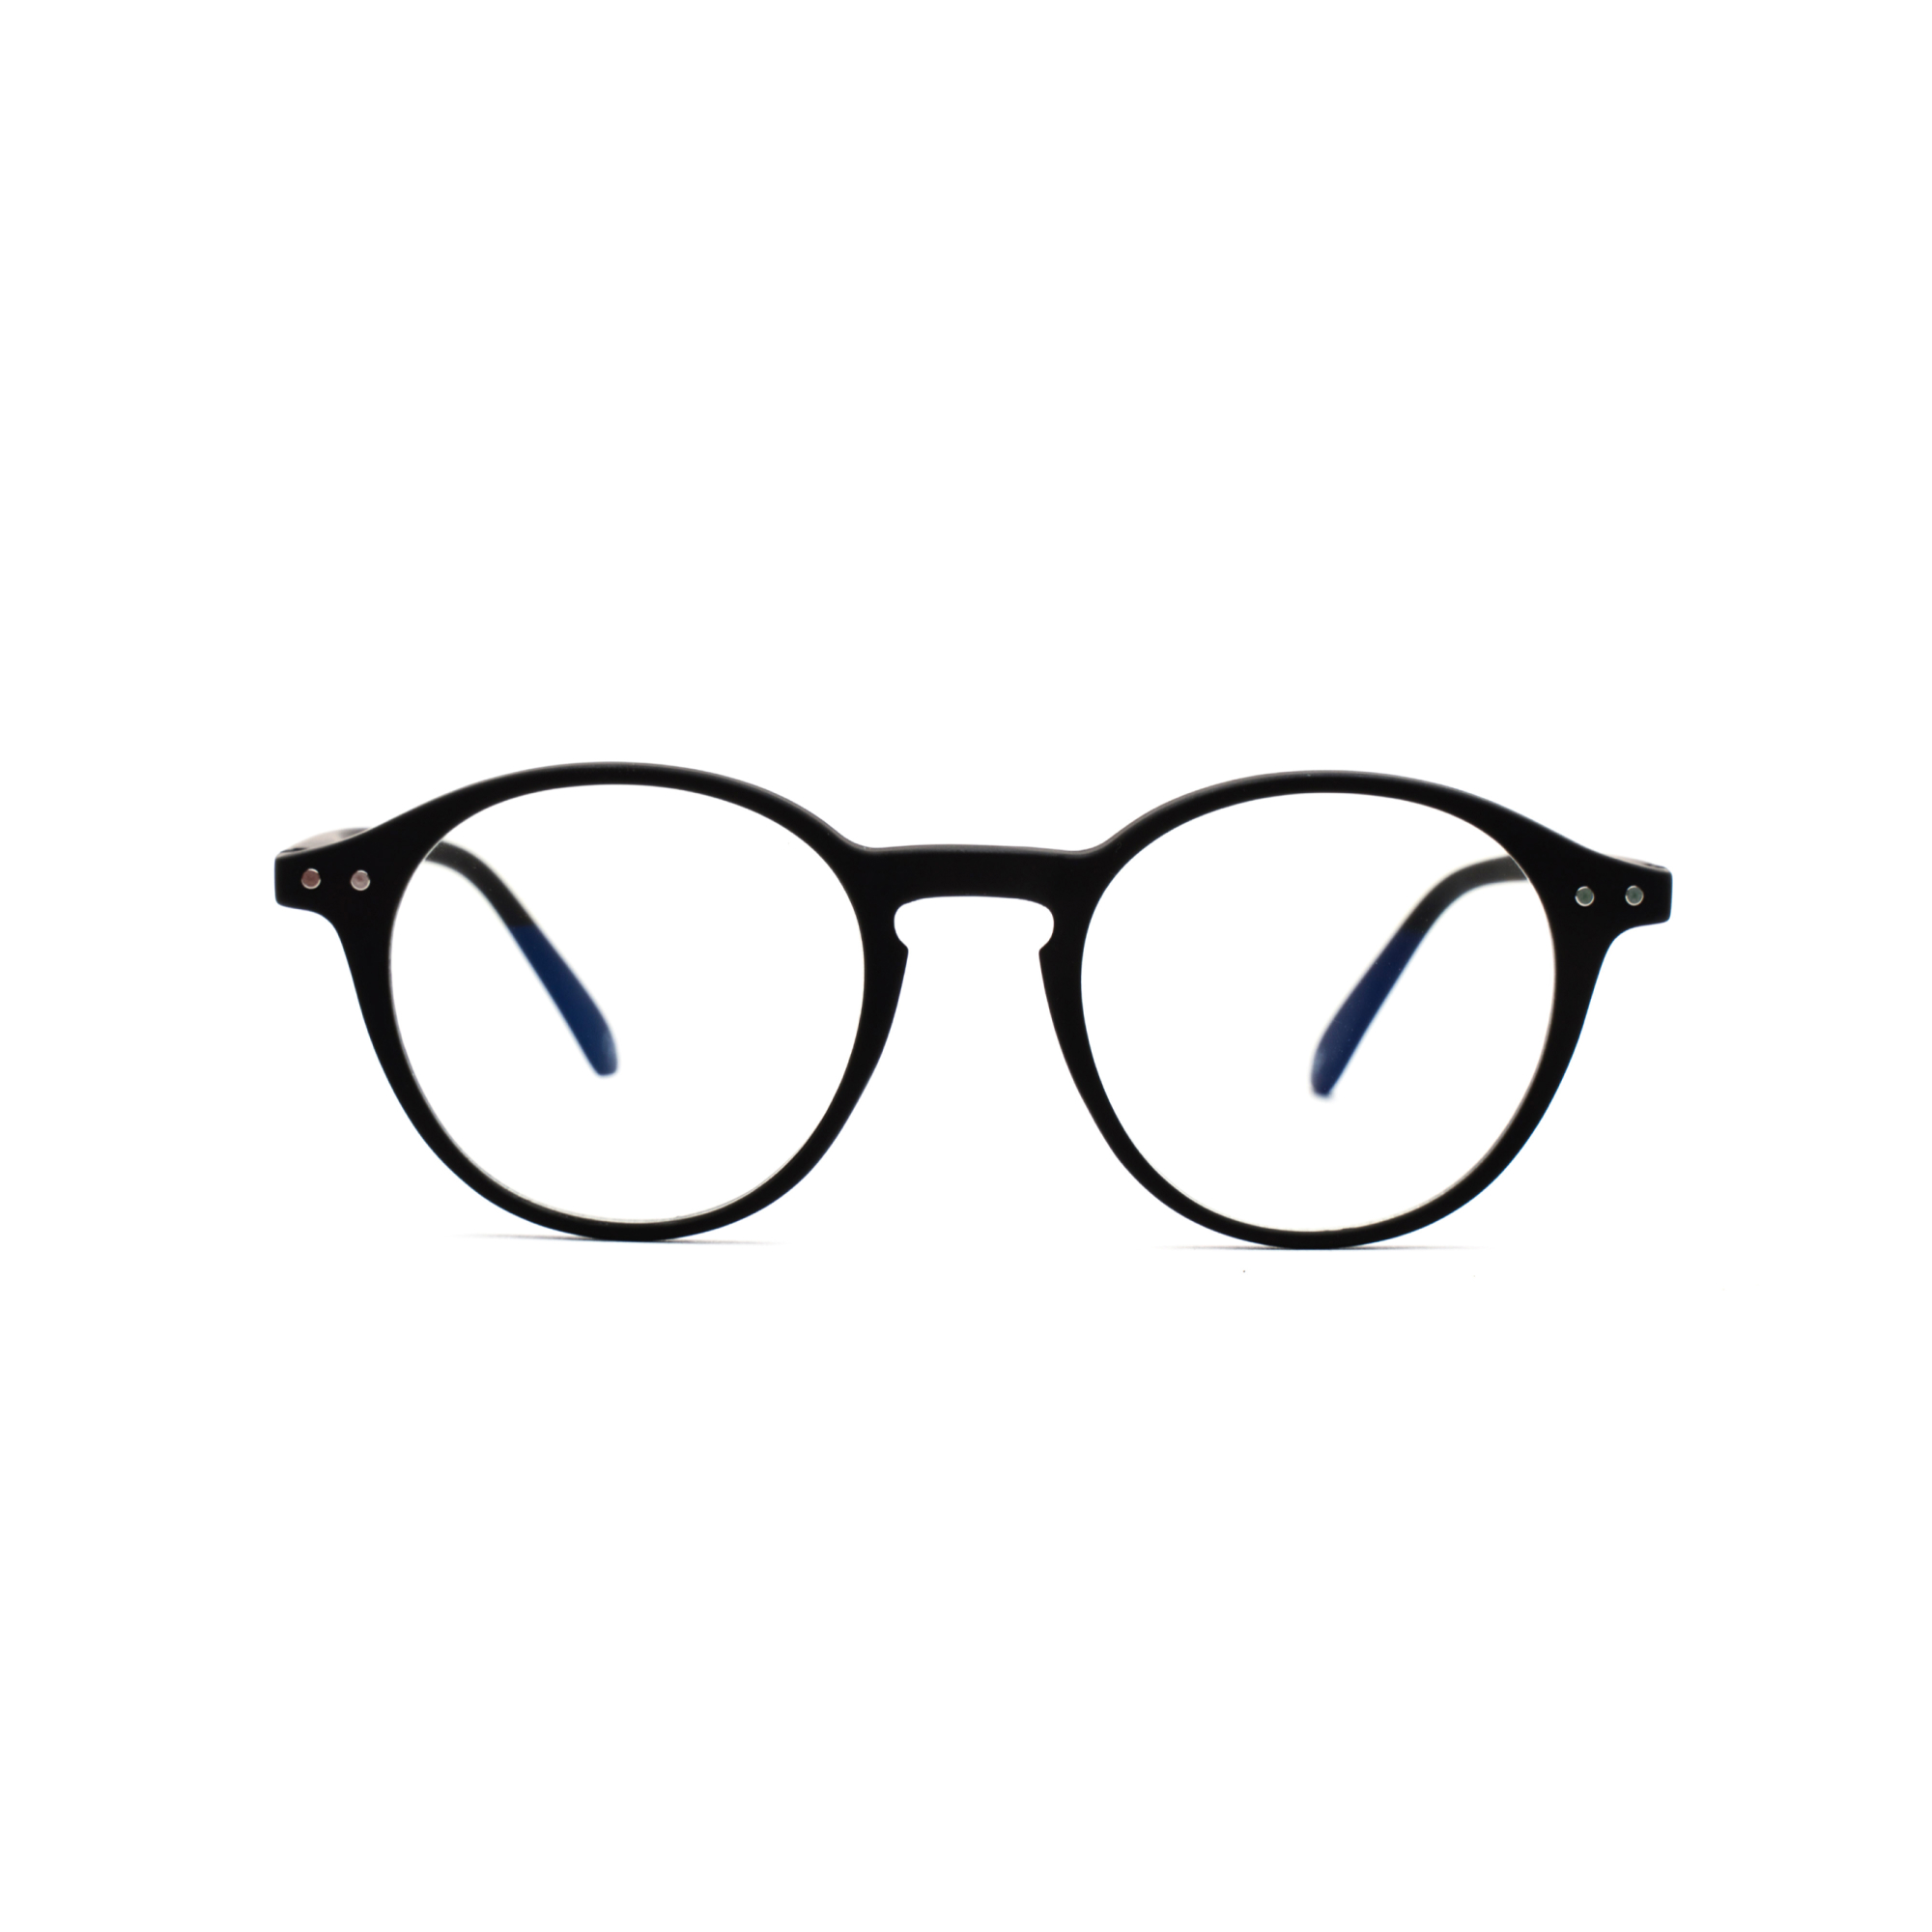 Men's blue light reading glasses – Luca BlueVision m - Black